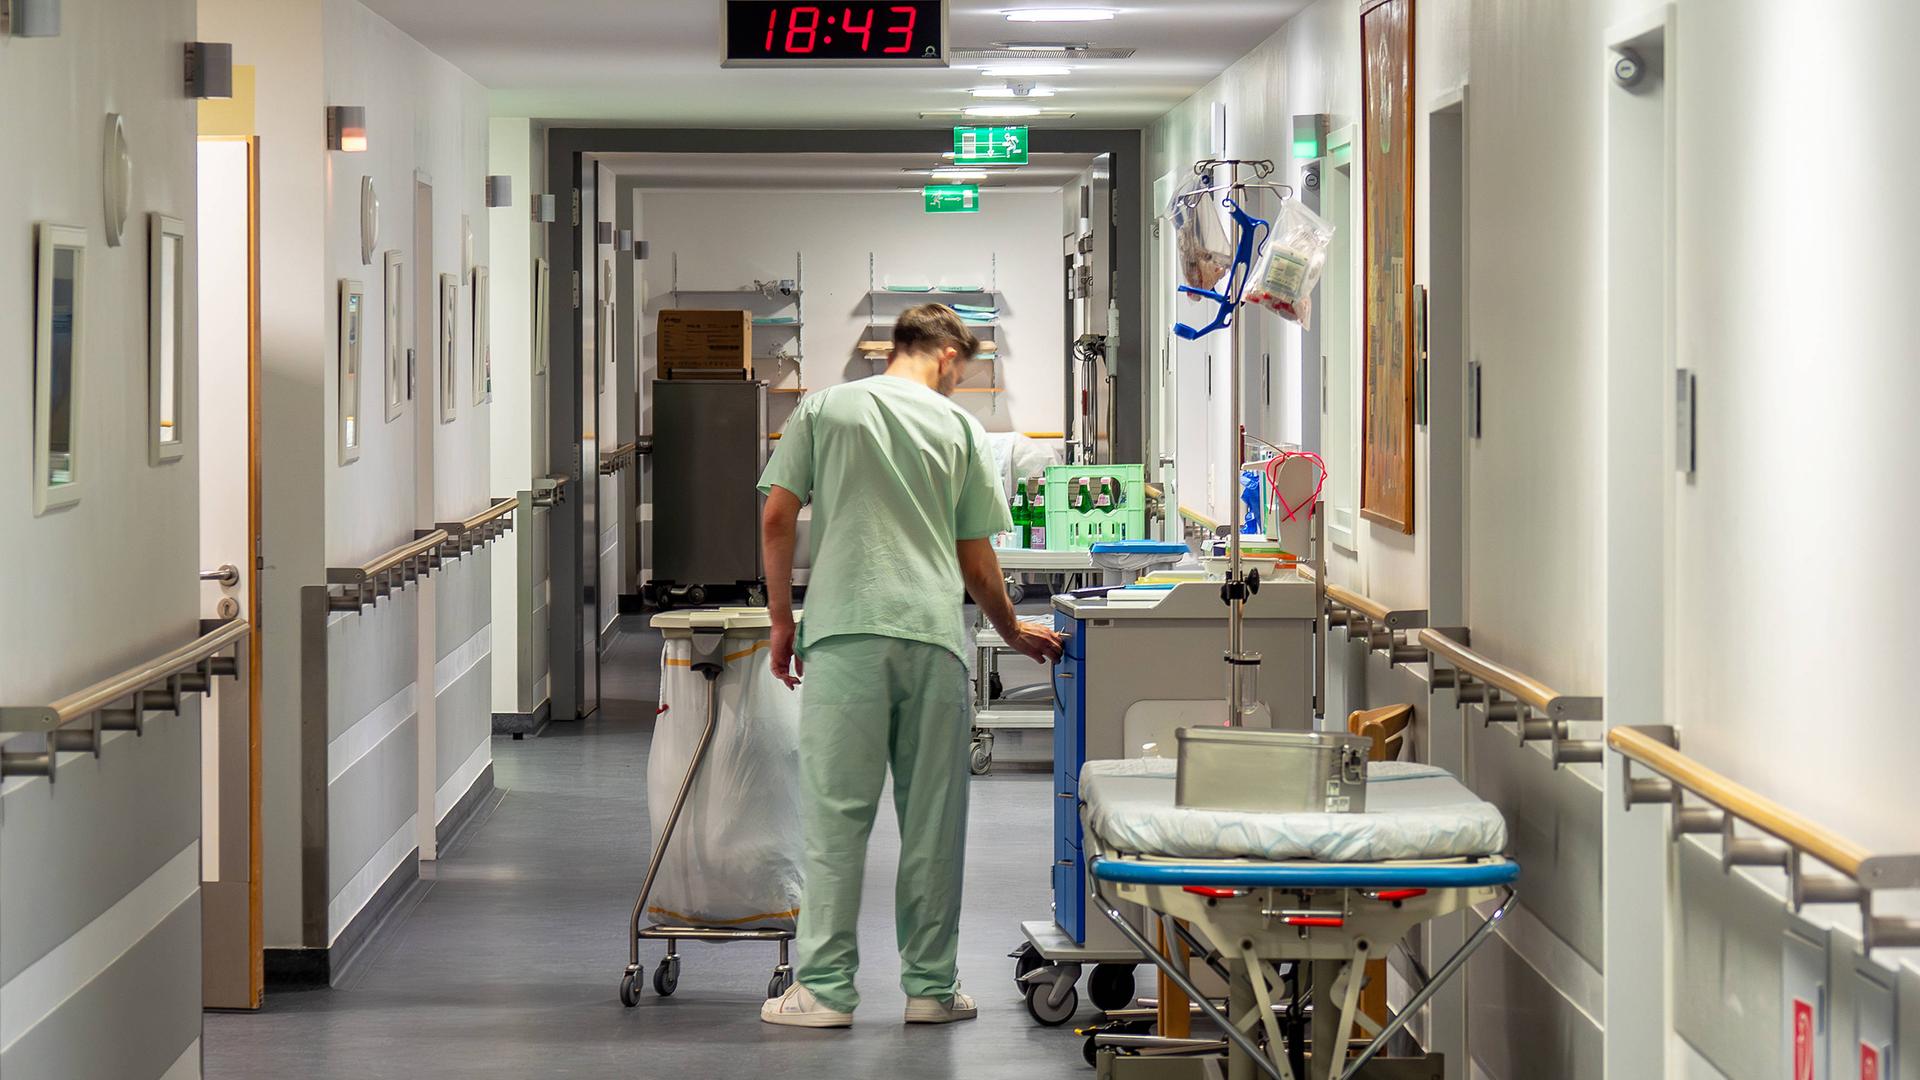 Ein Pfleger in hellgrüner Krankenhauskleidung geht einen Gang entlang und hantiert mit einem großen Abfallbehälter.